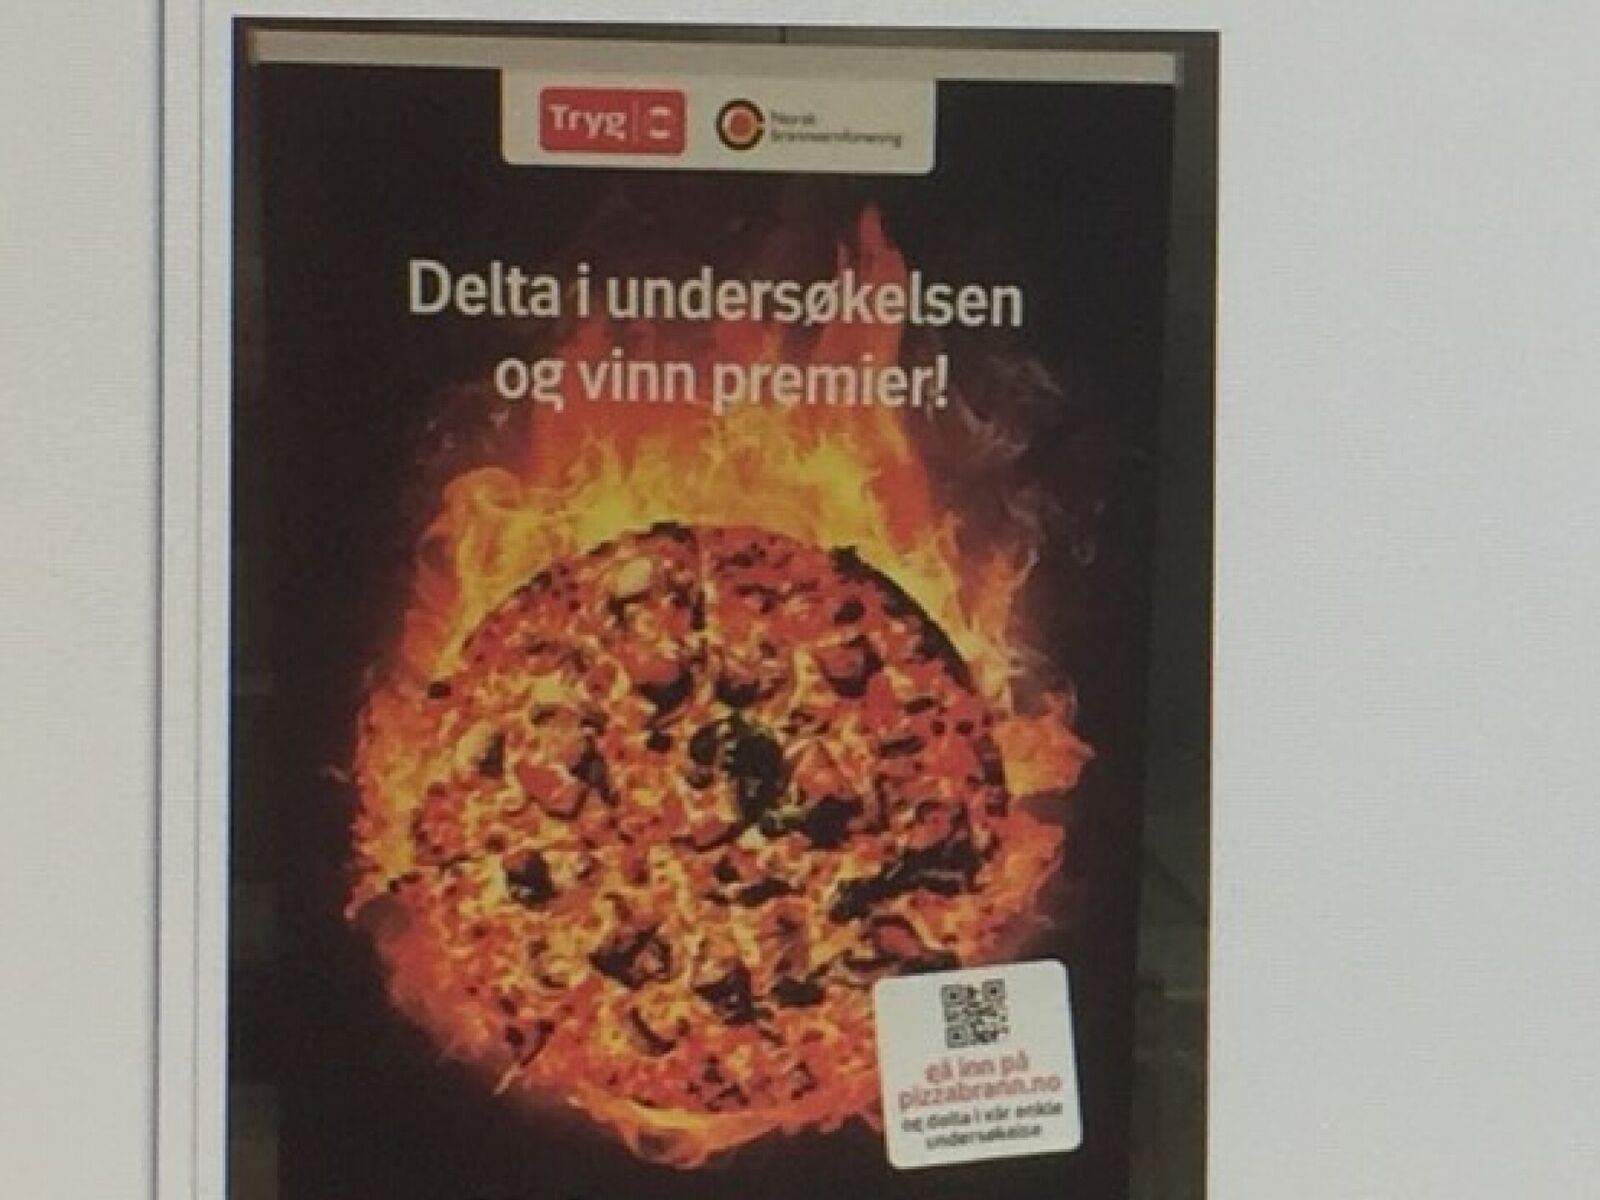 Faksimile fra kampanjen pizzabrann.no som er et samarbeid mellom Brannvernforeningen og Tryg forsikring. 